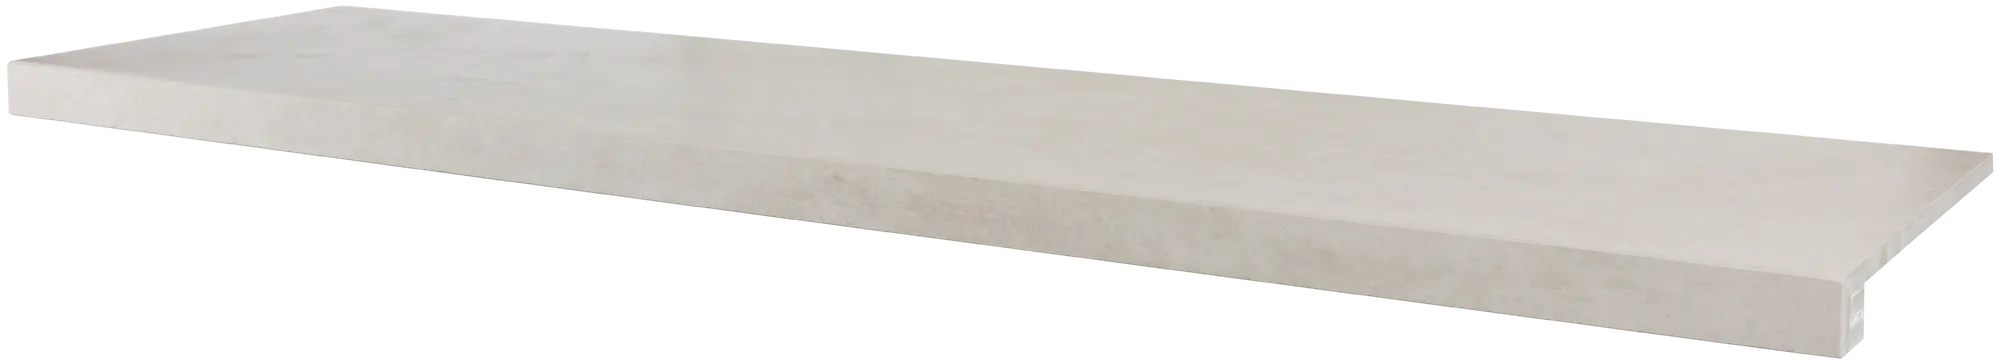 Peldaño de escalera porcelánico artens martins arena 30x120 cm